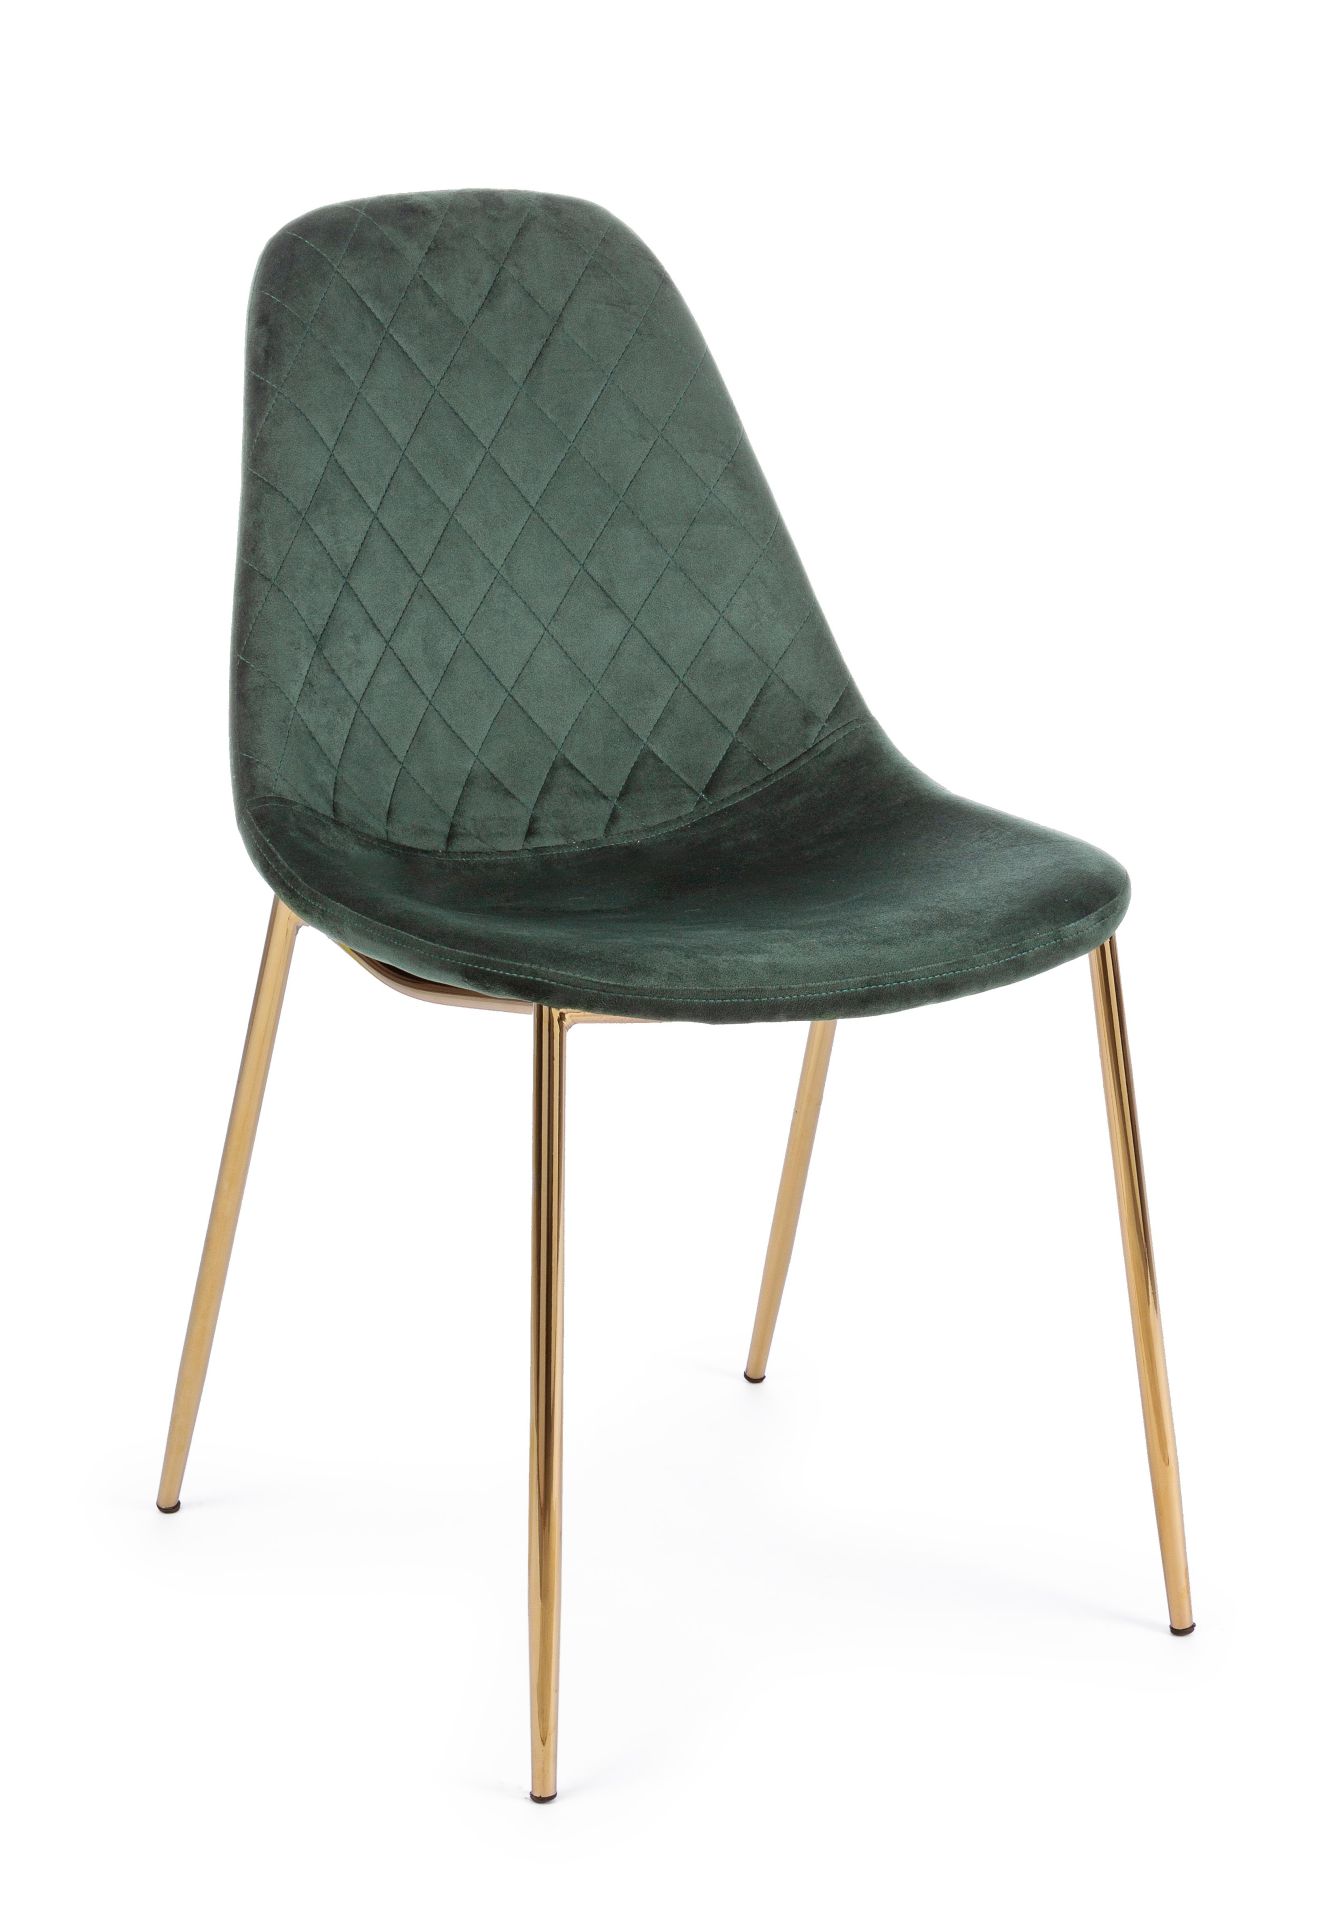 Der Esszimmerstuhl Terry überzeugt mit seinem modernem Design. Gefertigt wurde der Stuhl aus einem Samt-Bezug, welcher einen Dunkelgrünen Farbton besitzt. Das Gestell ist aus Metall und ist Gold. Die Sitzhöhe beträgt 47 cm.